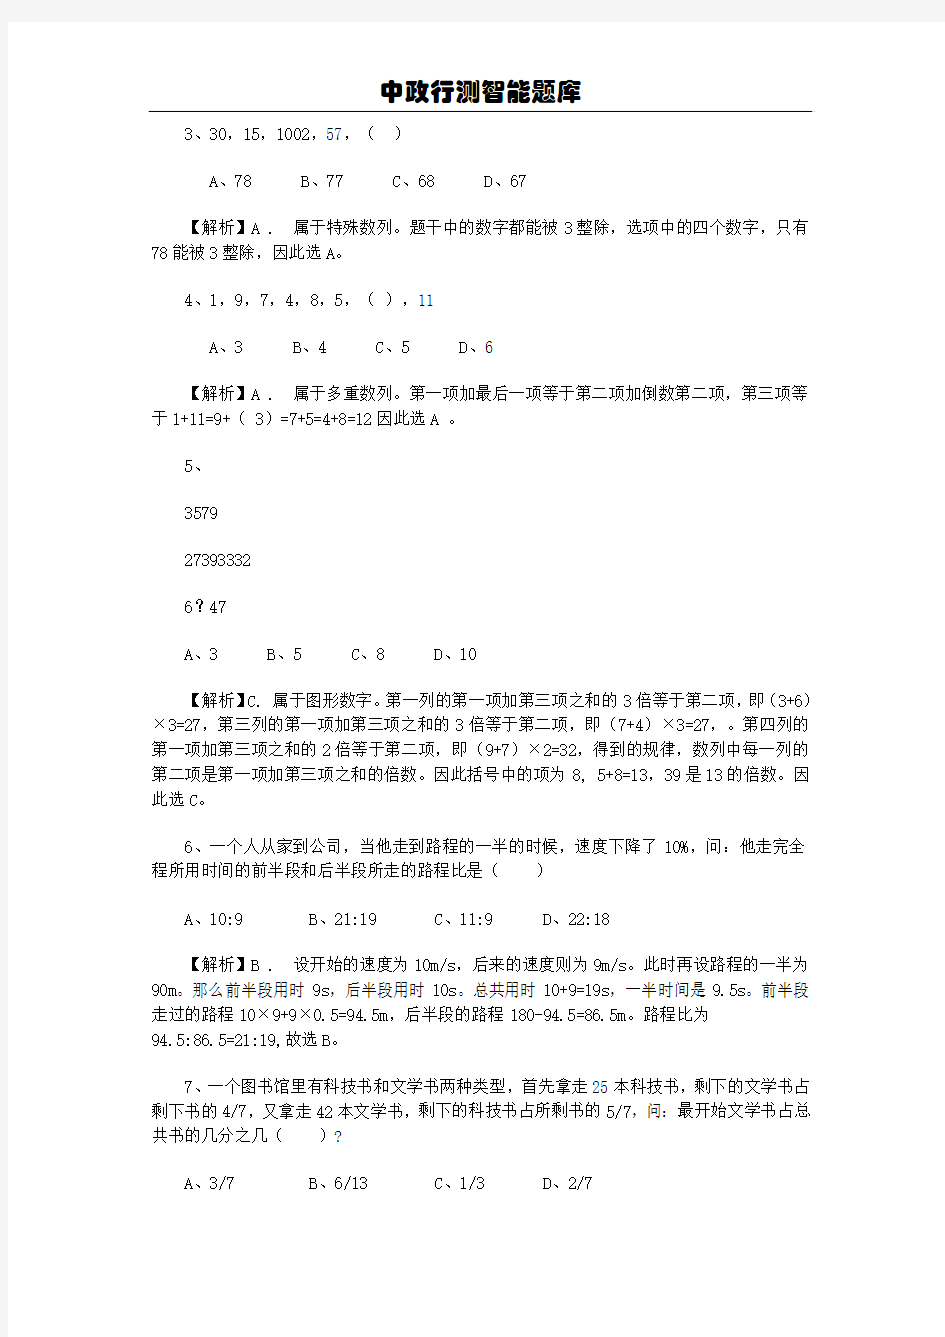 2011年广东省公务员考试行测真题答案及解析[1]